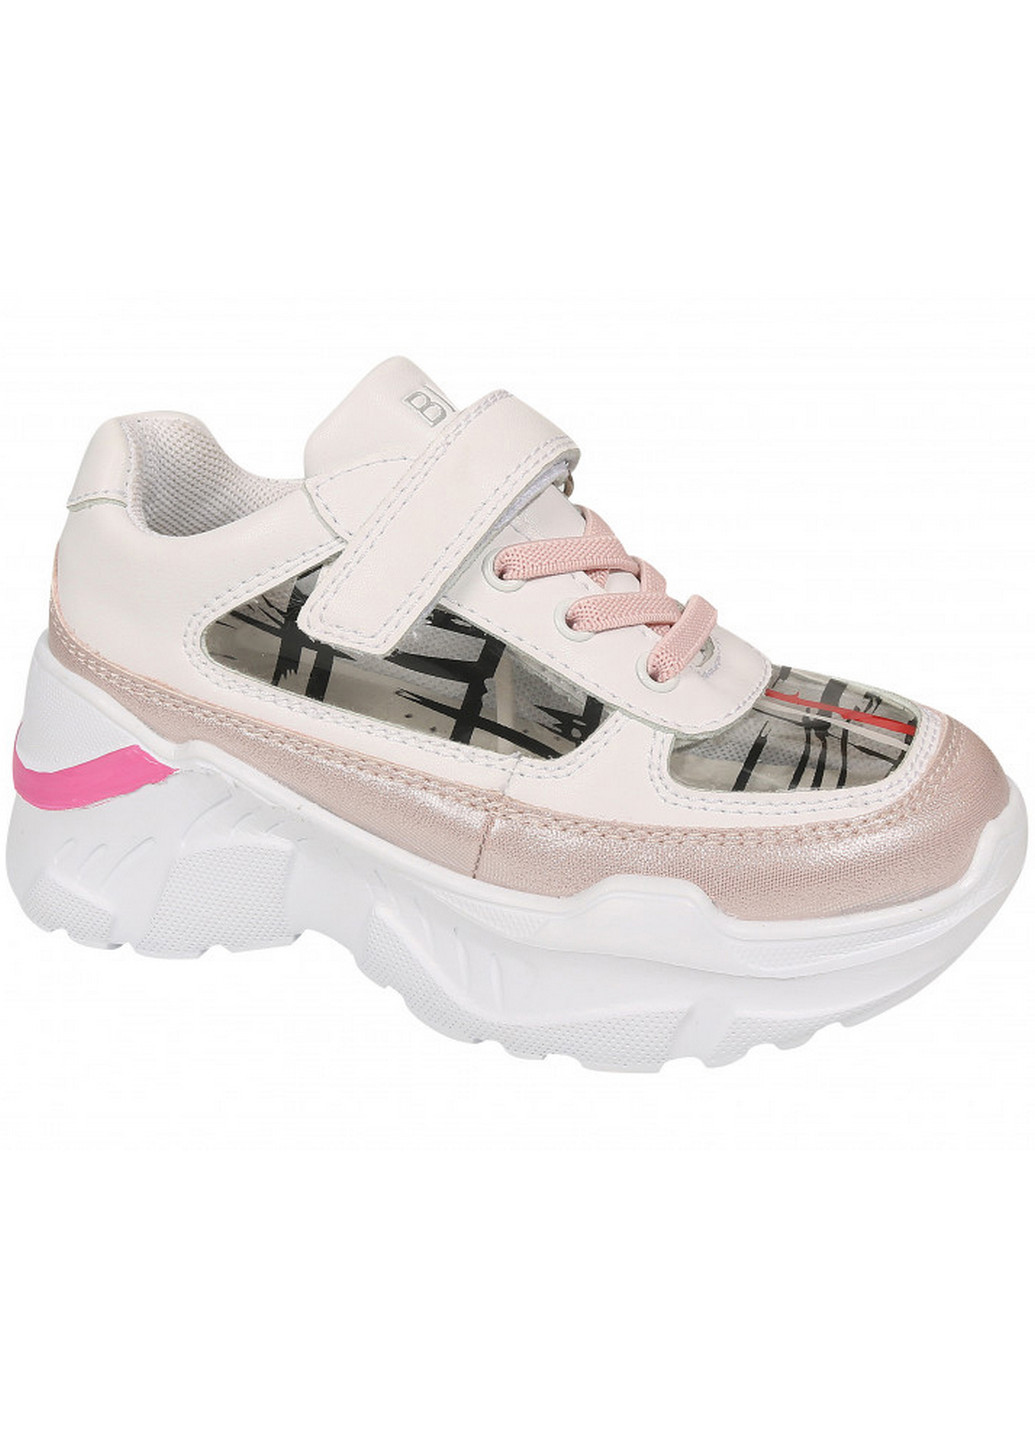 Белые всесезонные кроссовки на высокой платформе 0620c 35 бело-розовый Biki